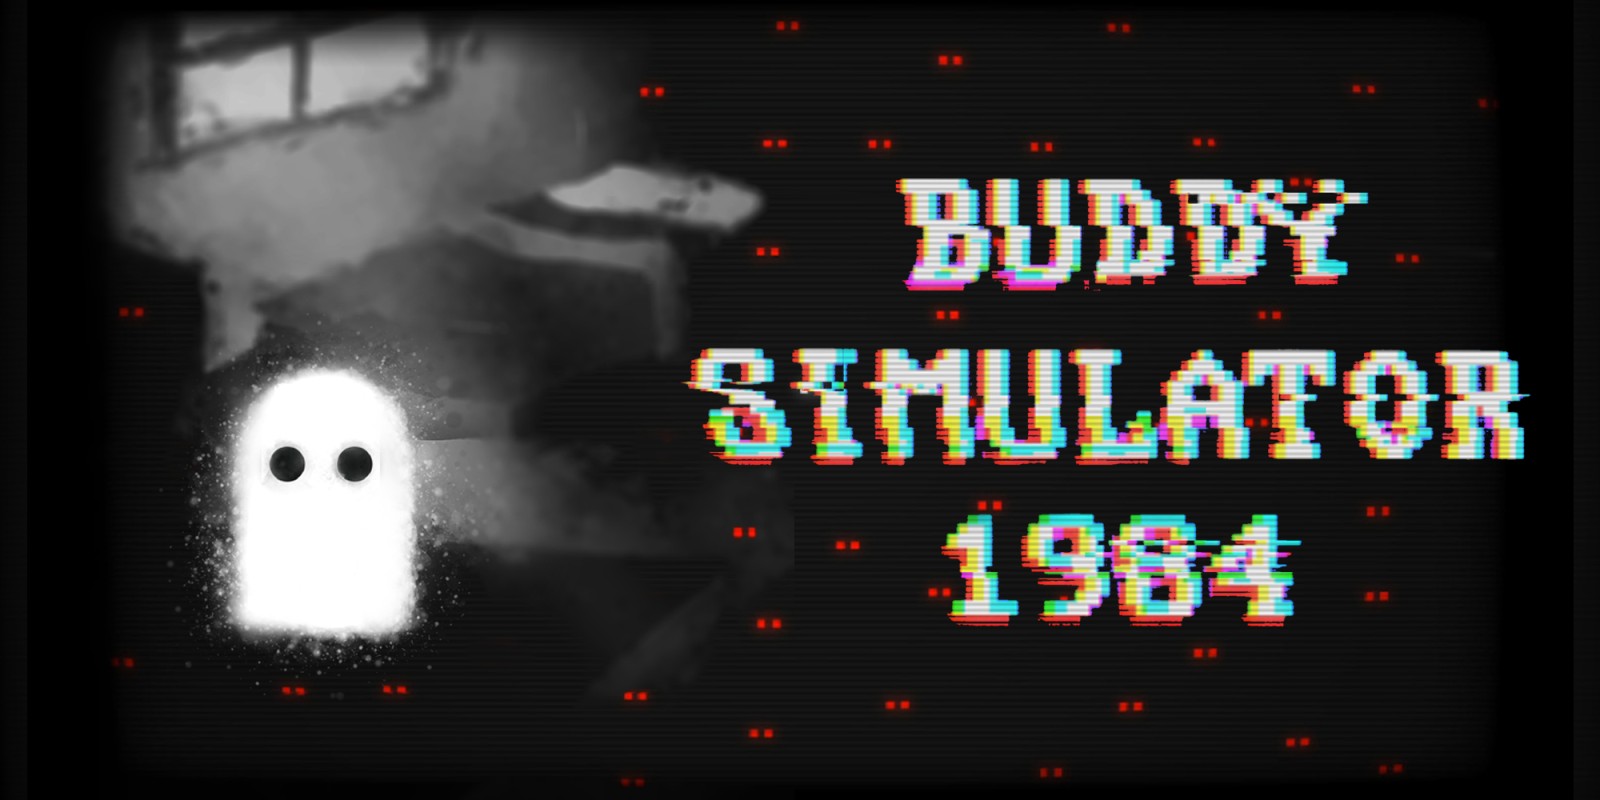 buddy simulator 1984 nintendo switch